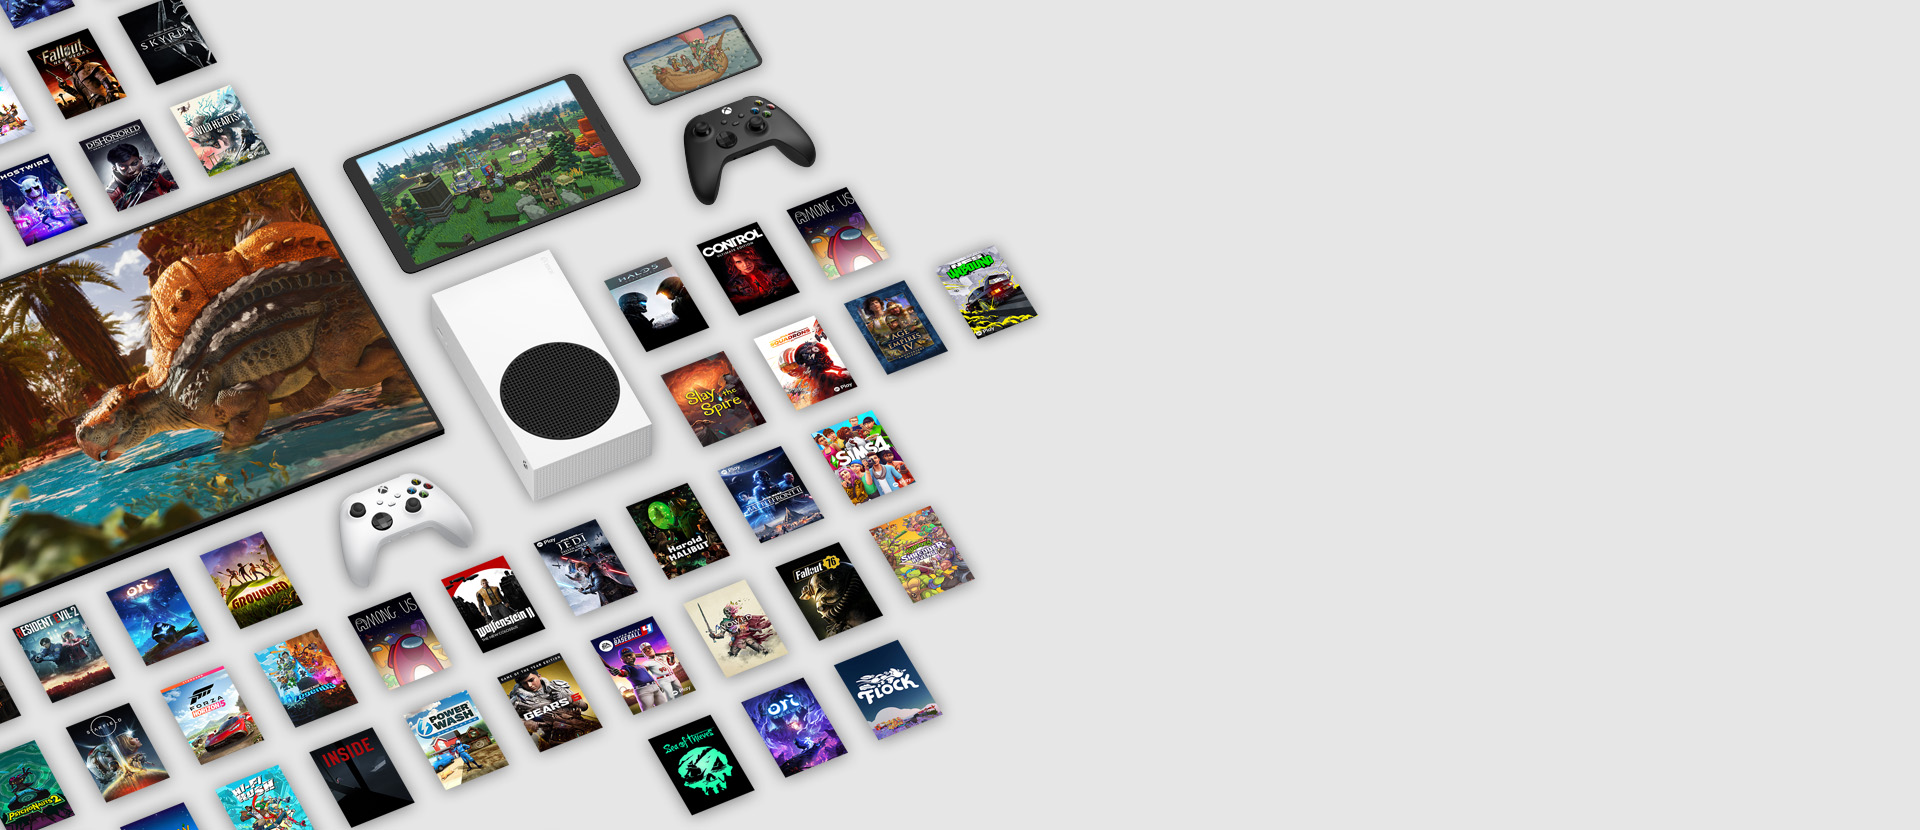 Imágenes de varios juegos disponibles ahora con Xbox Game Pass Ultimate rodean varios dispositivos, incluidos una consola, un celular, una tableta, un televisor inteligente y controles.